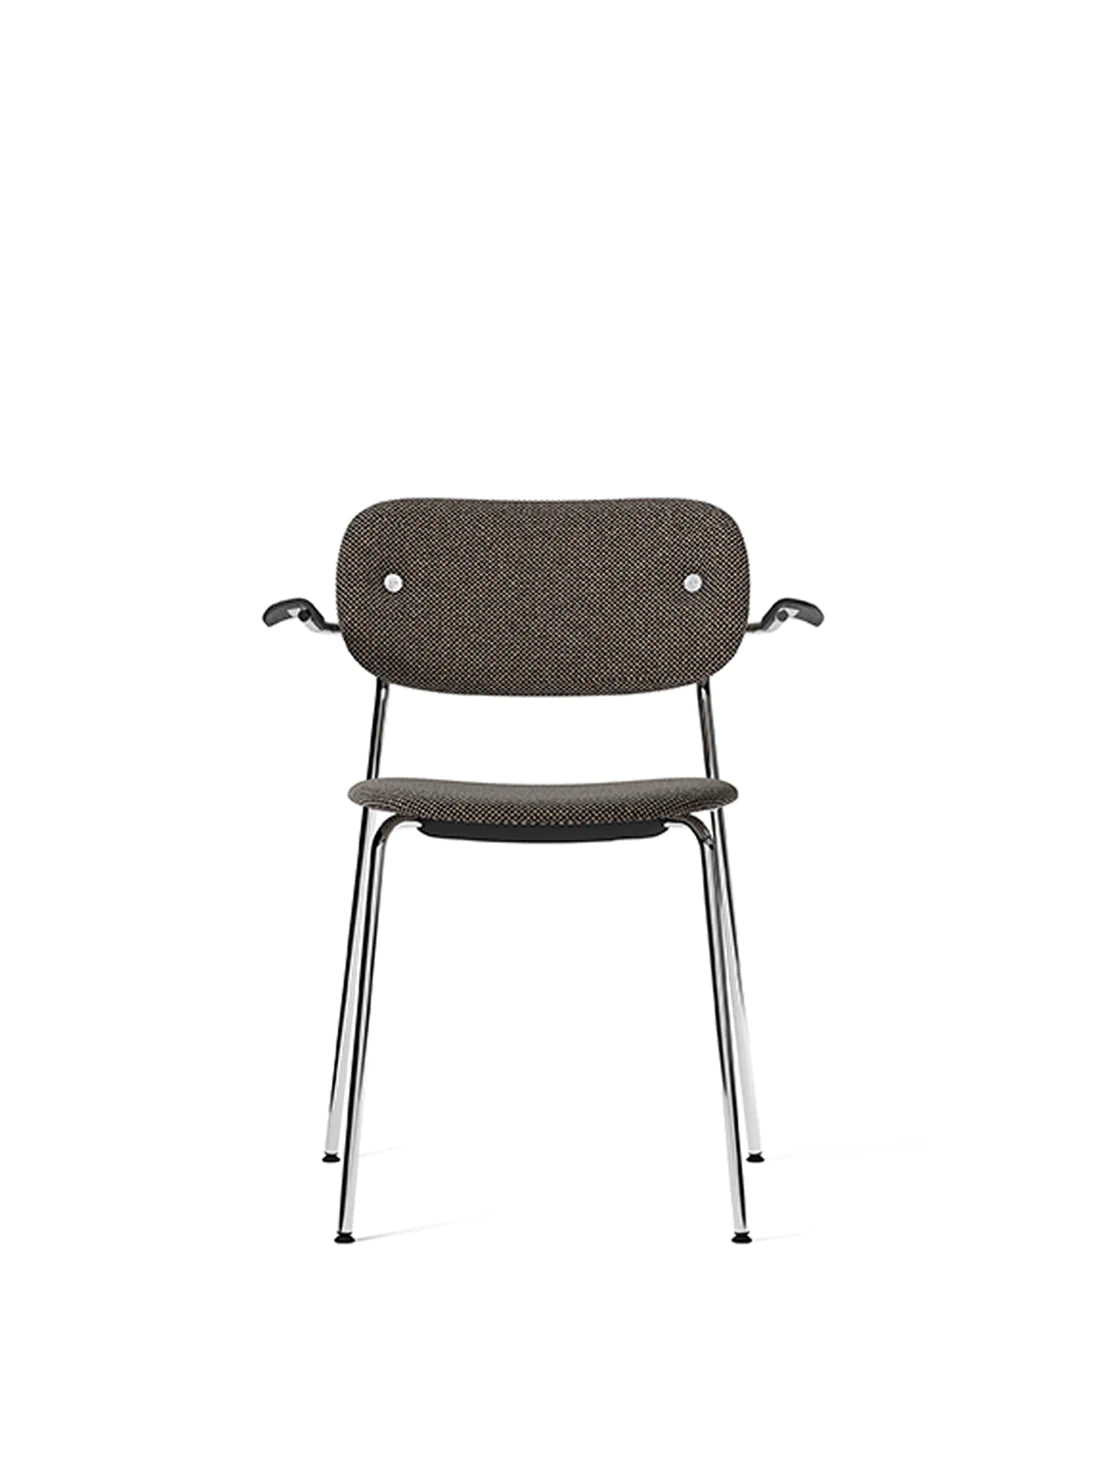 Co Chair Fully Upholstered Doppionama Chrome Black Oak